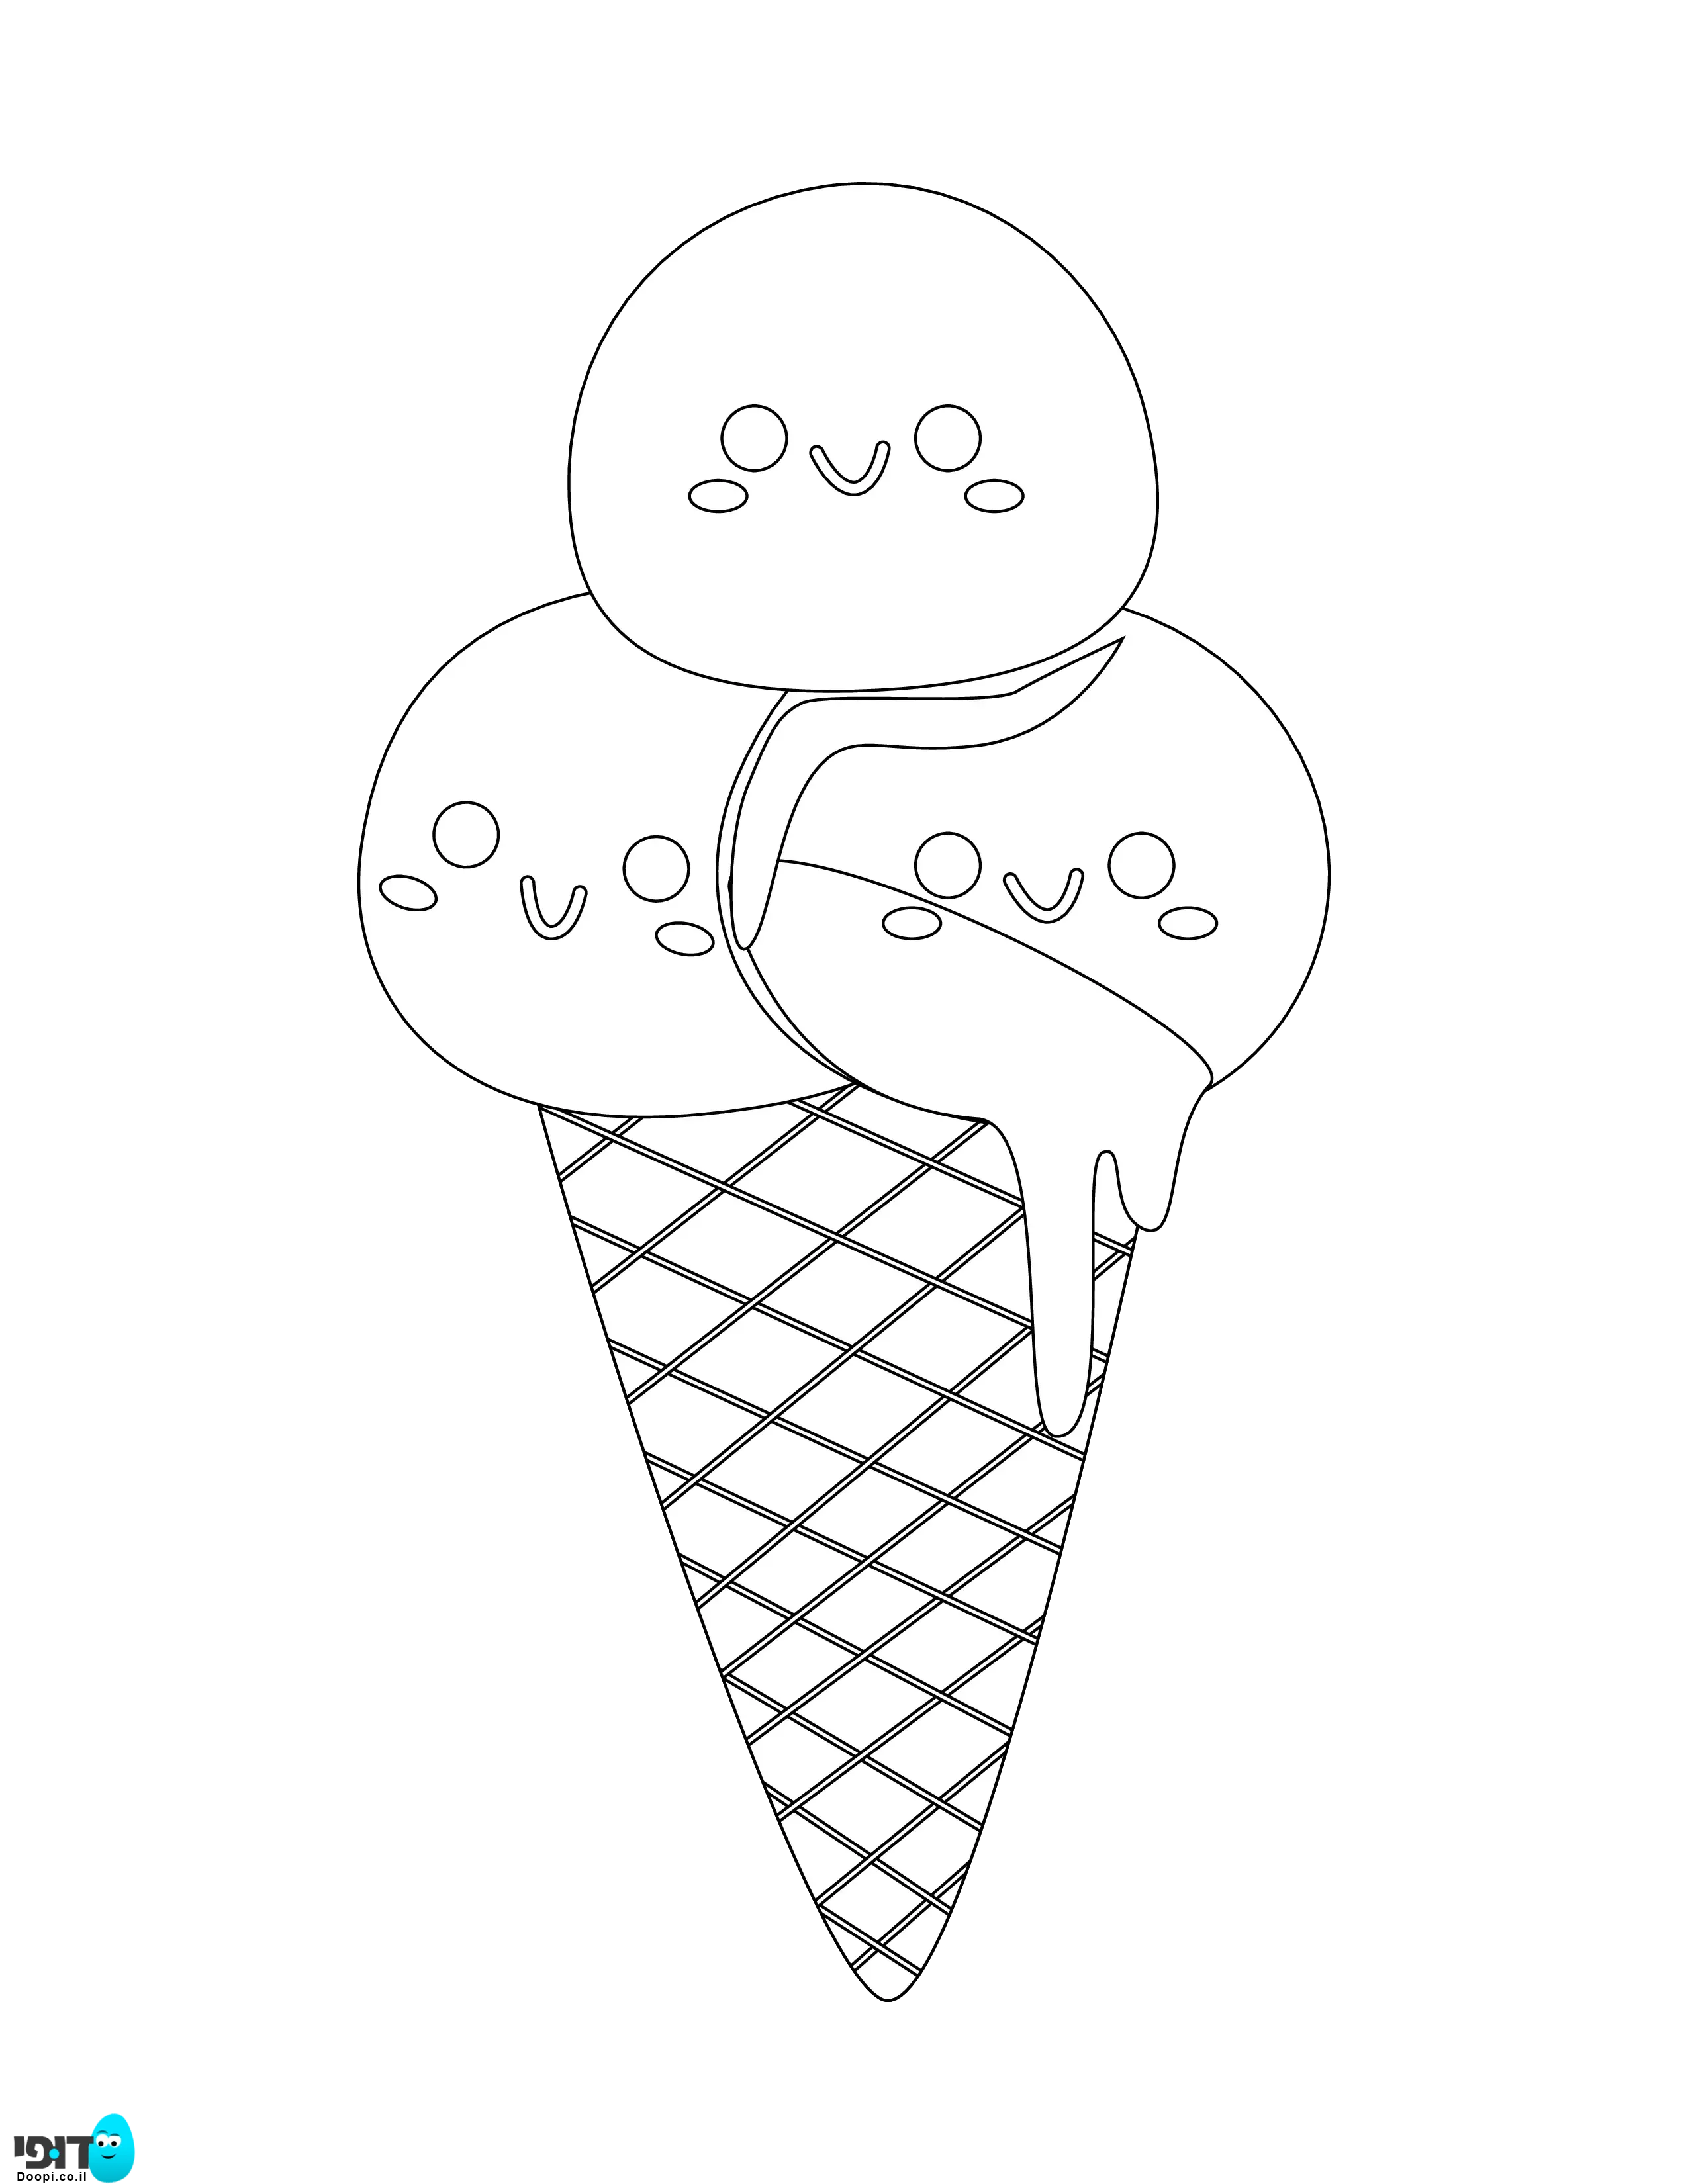 דף צביעה של גלידה עם חיוכים להדפסה